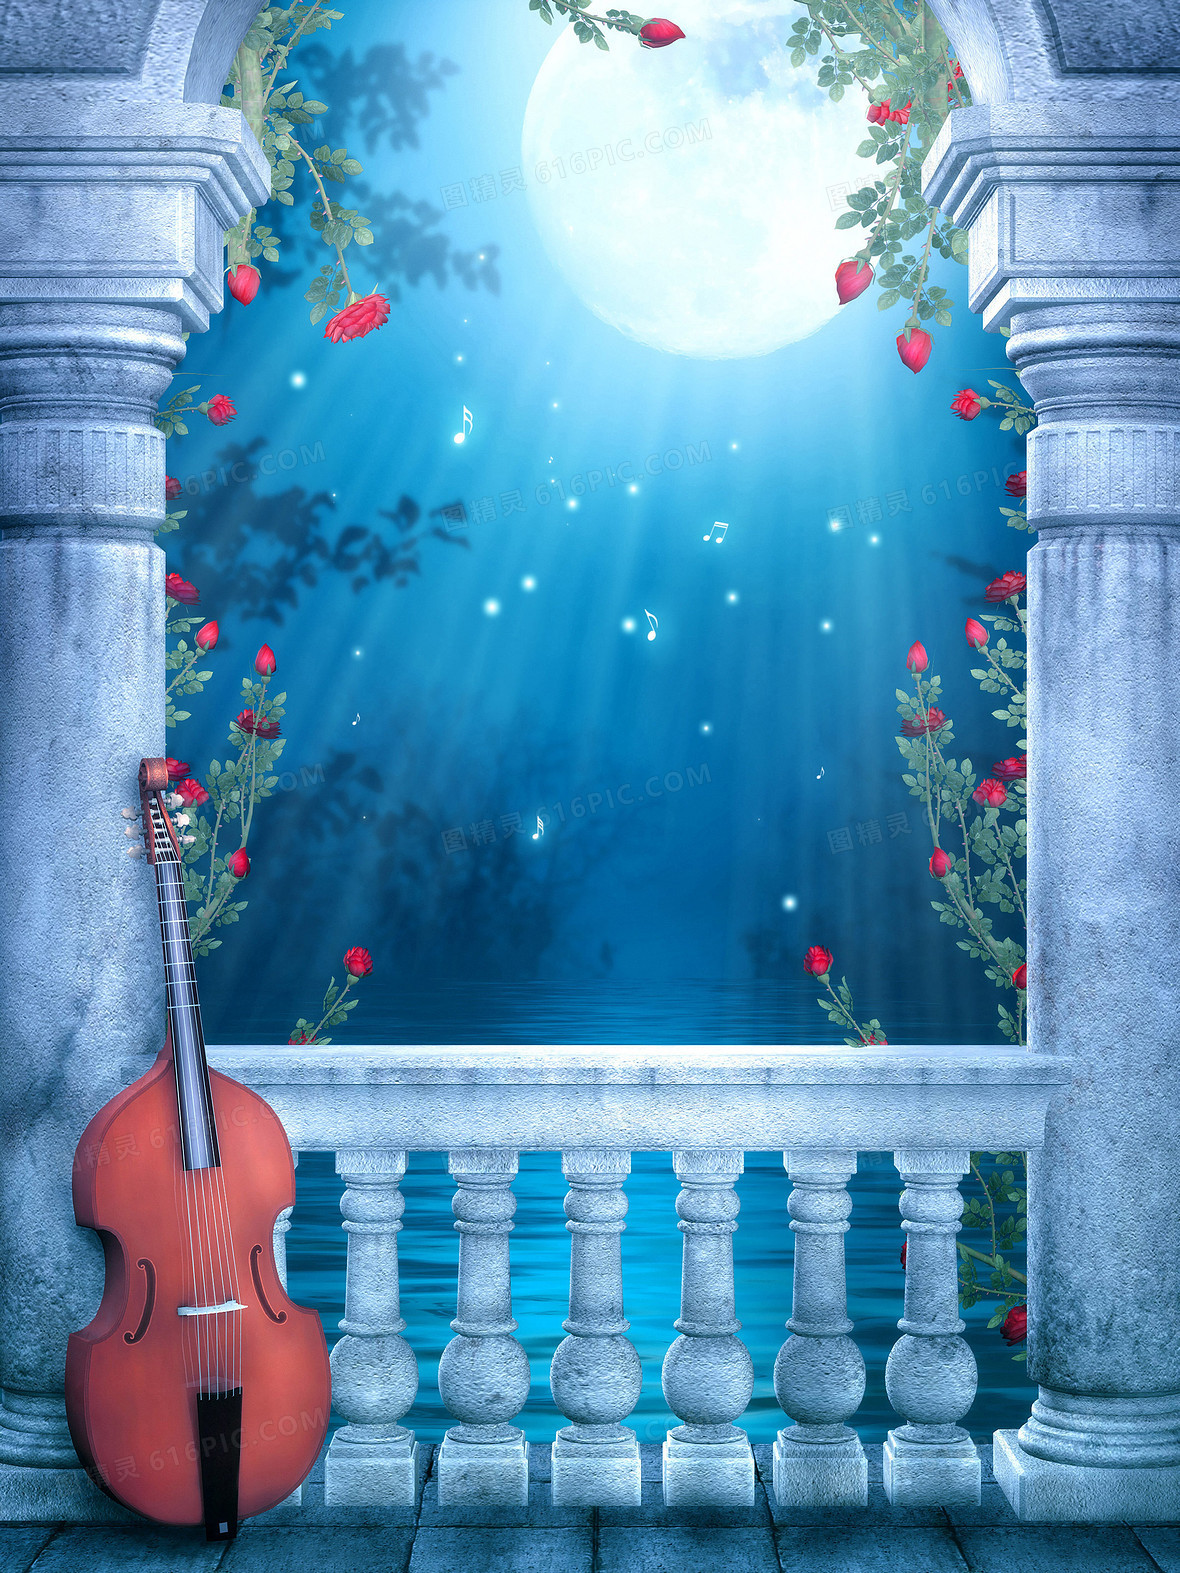 夜色皎洁月光罗马柱小提琴背景